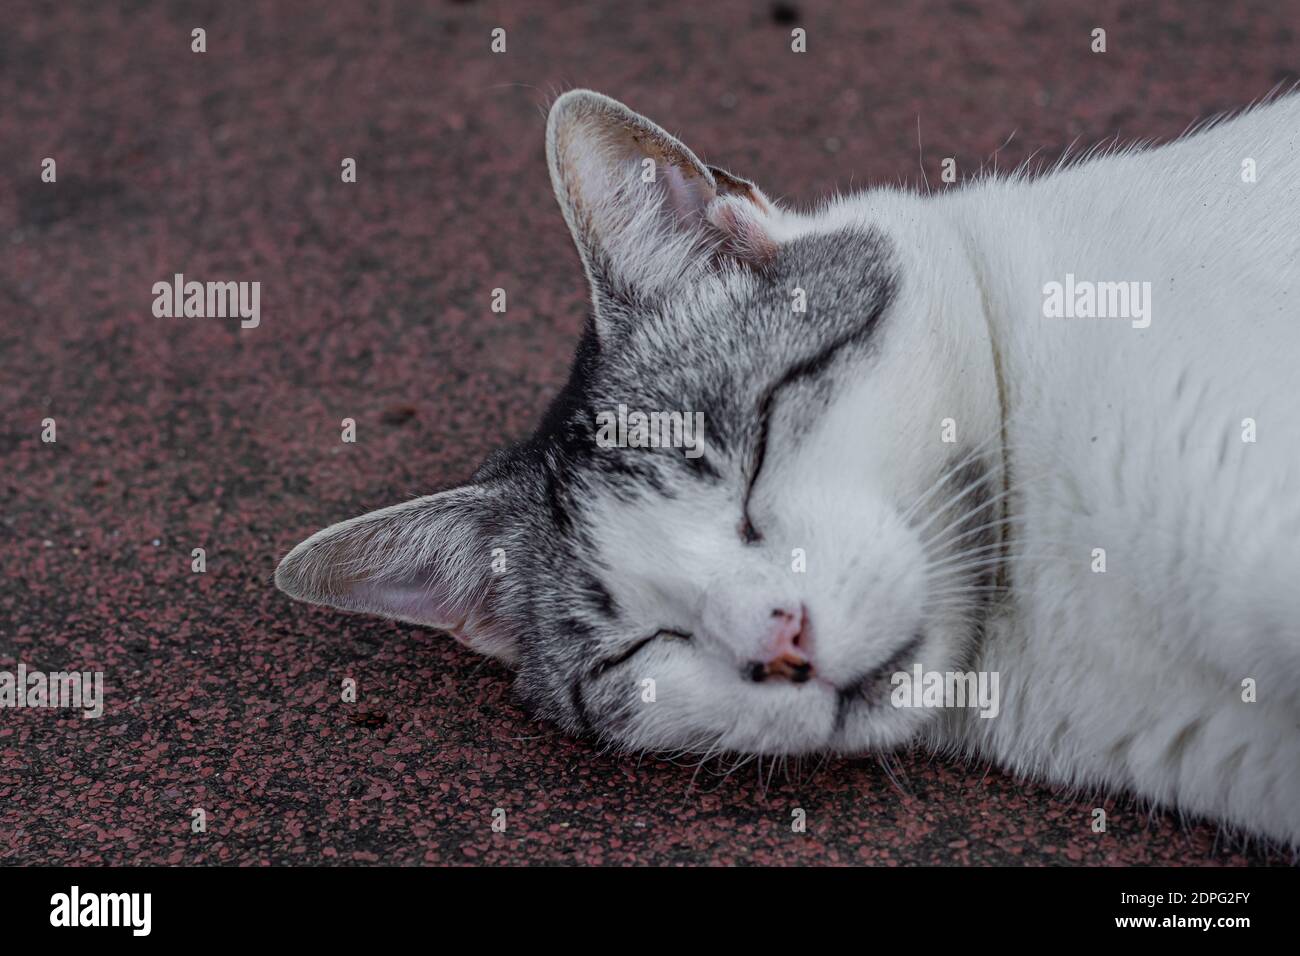 primer plano de gato blanco y gris durmiendo Foto de stock